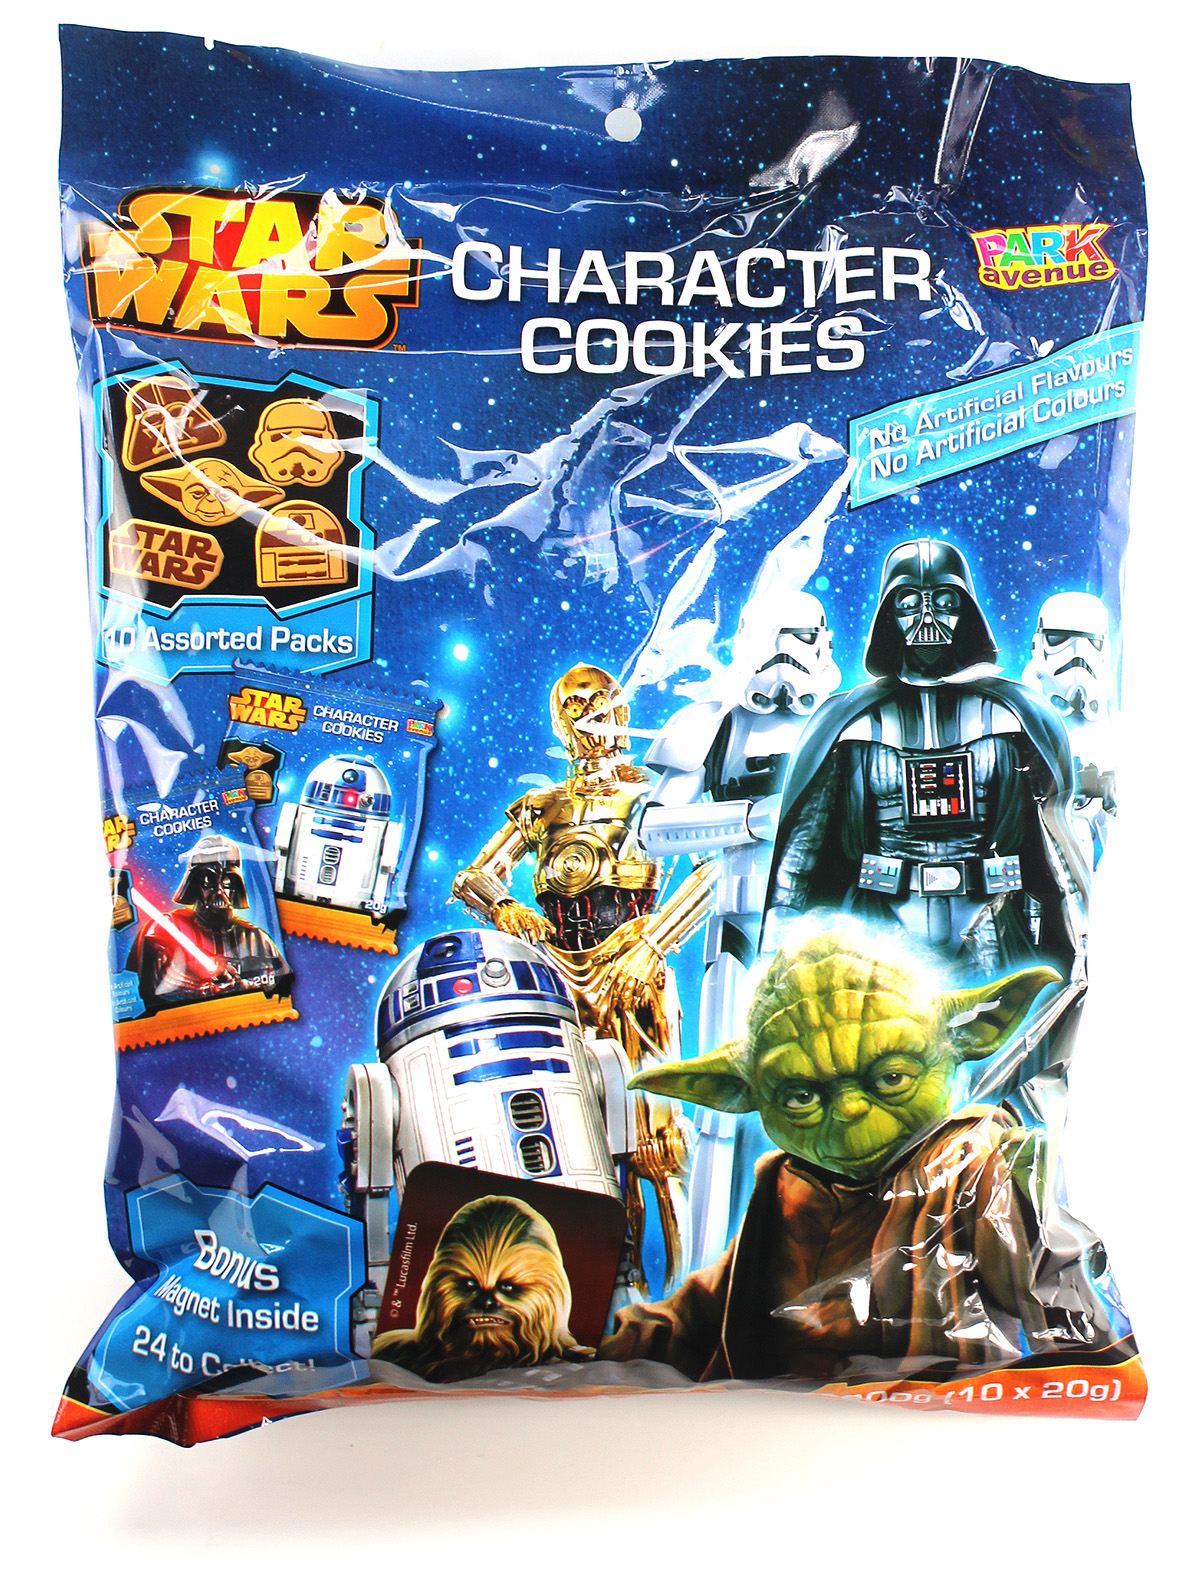 Park Avenue Star Wars cookies